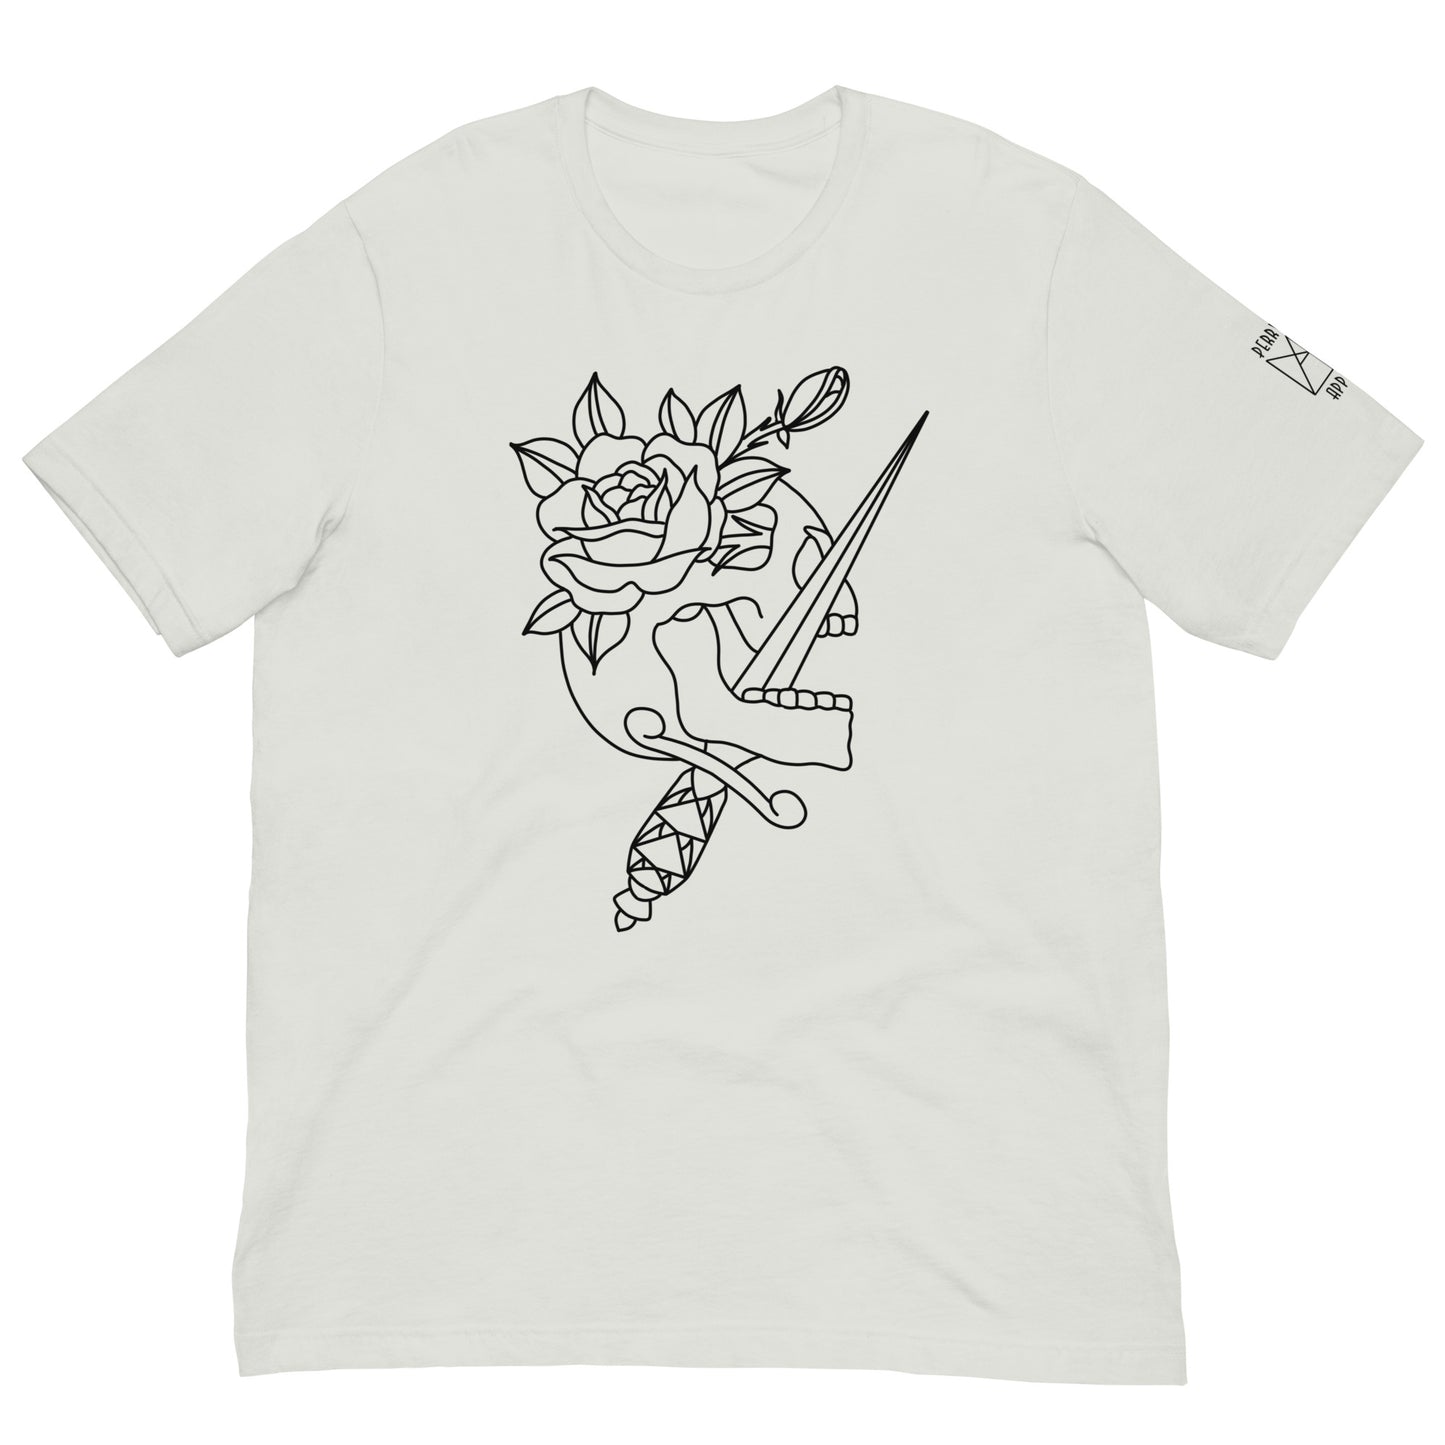 Unisex T-shirt - Skull Rose #3 - Dark on Light